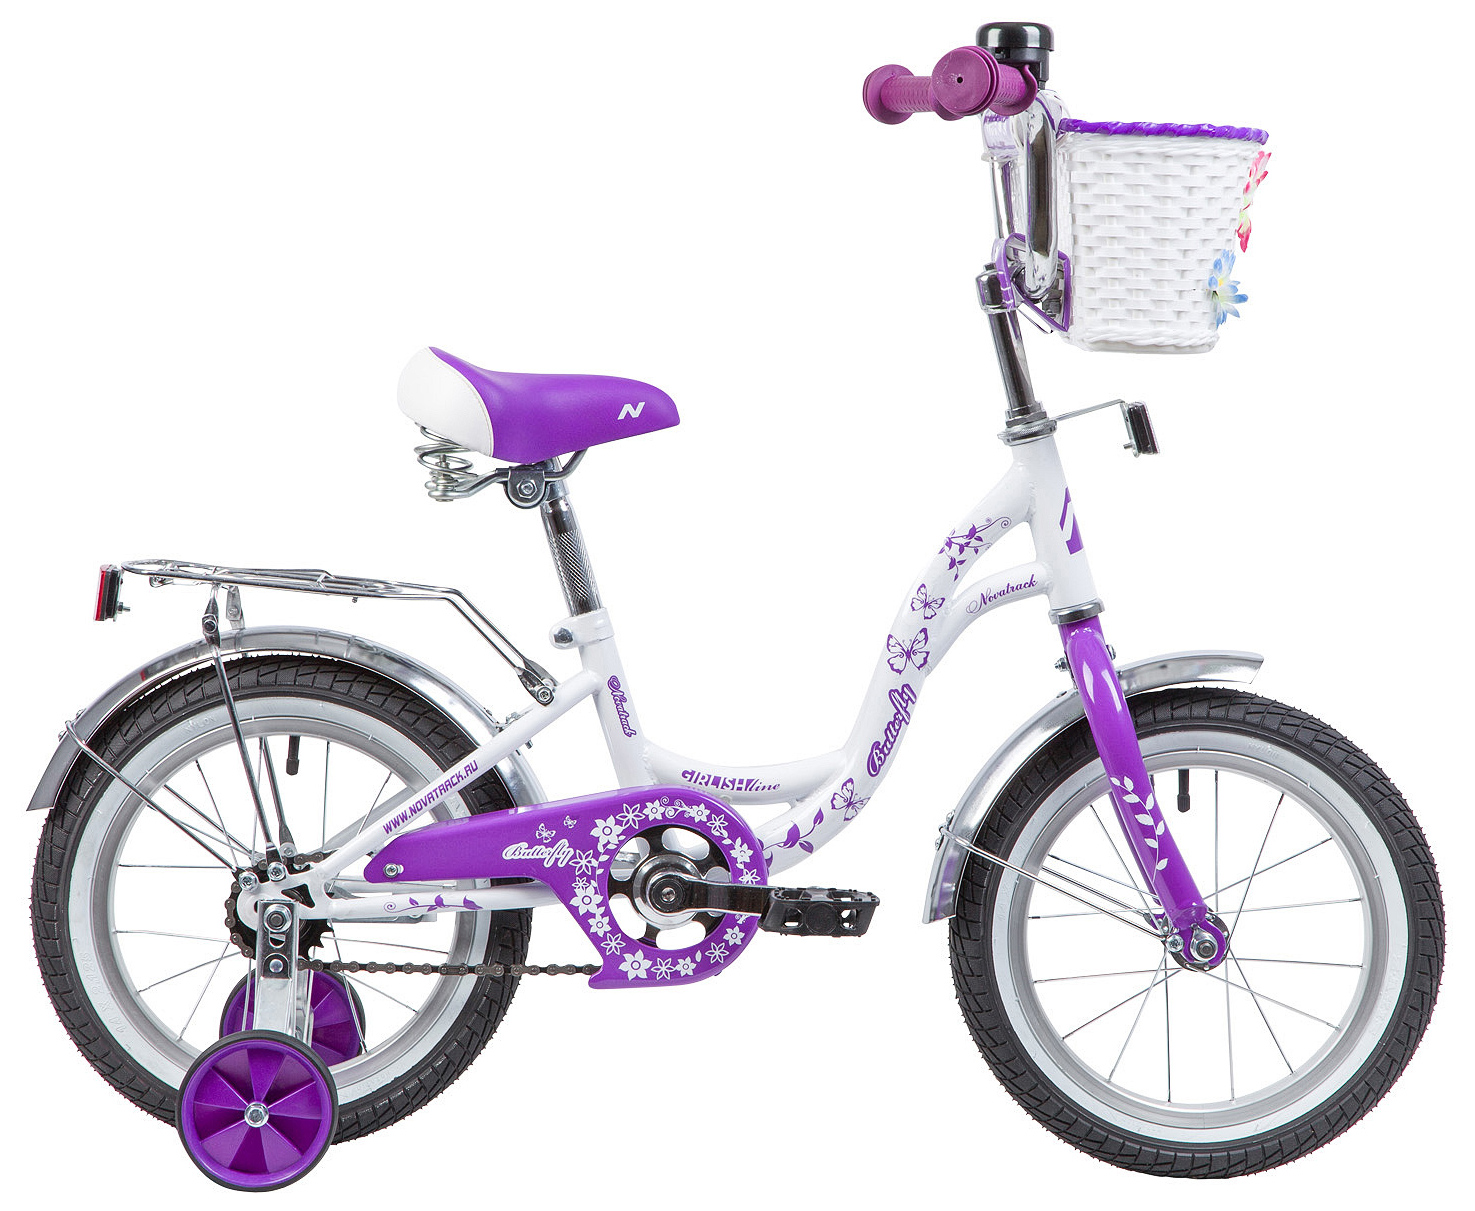  Отзывы о Детском велосипеде Novatrack Butterfly 14 2019